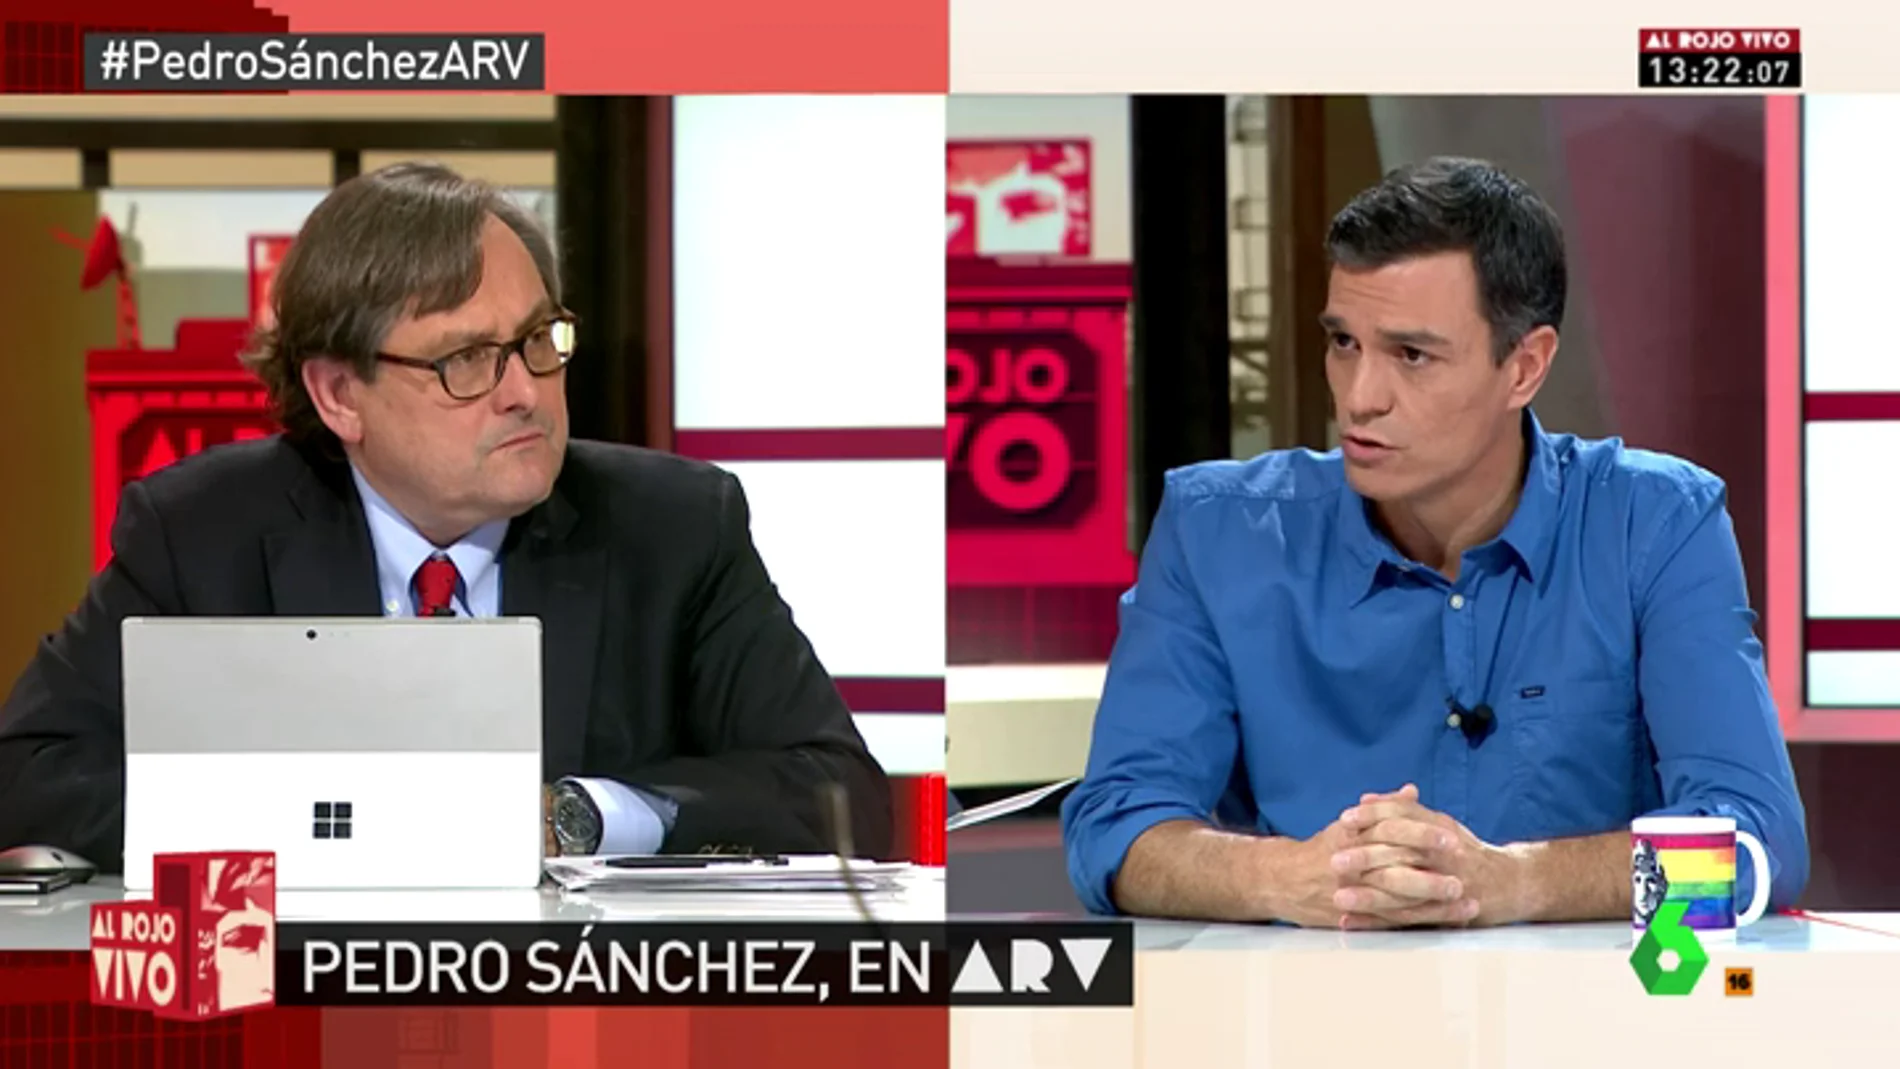 Pedro Sánchez responde a Francisco Marhuenda en ARV